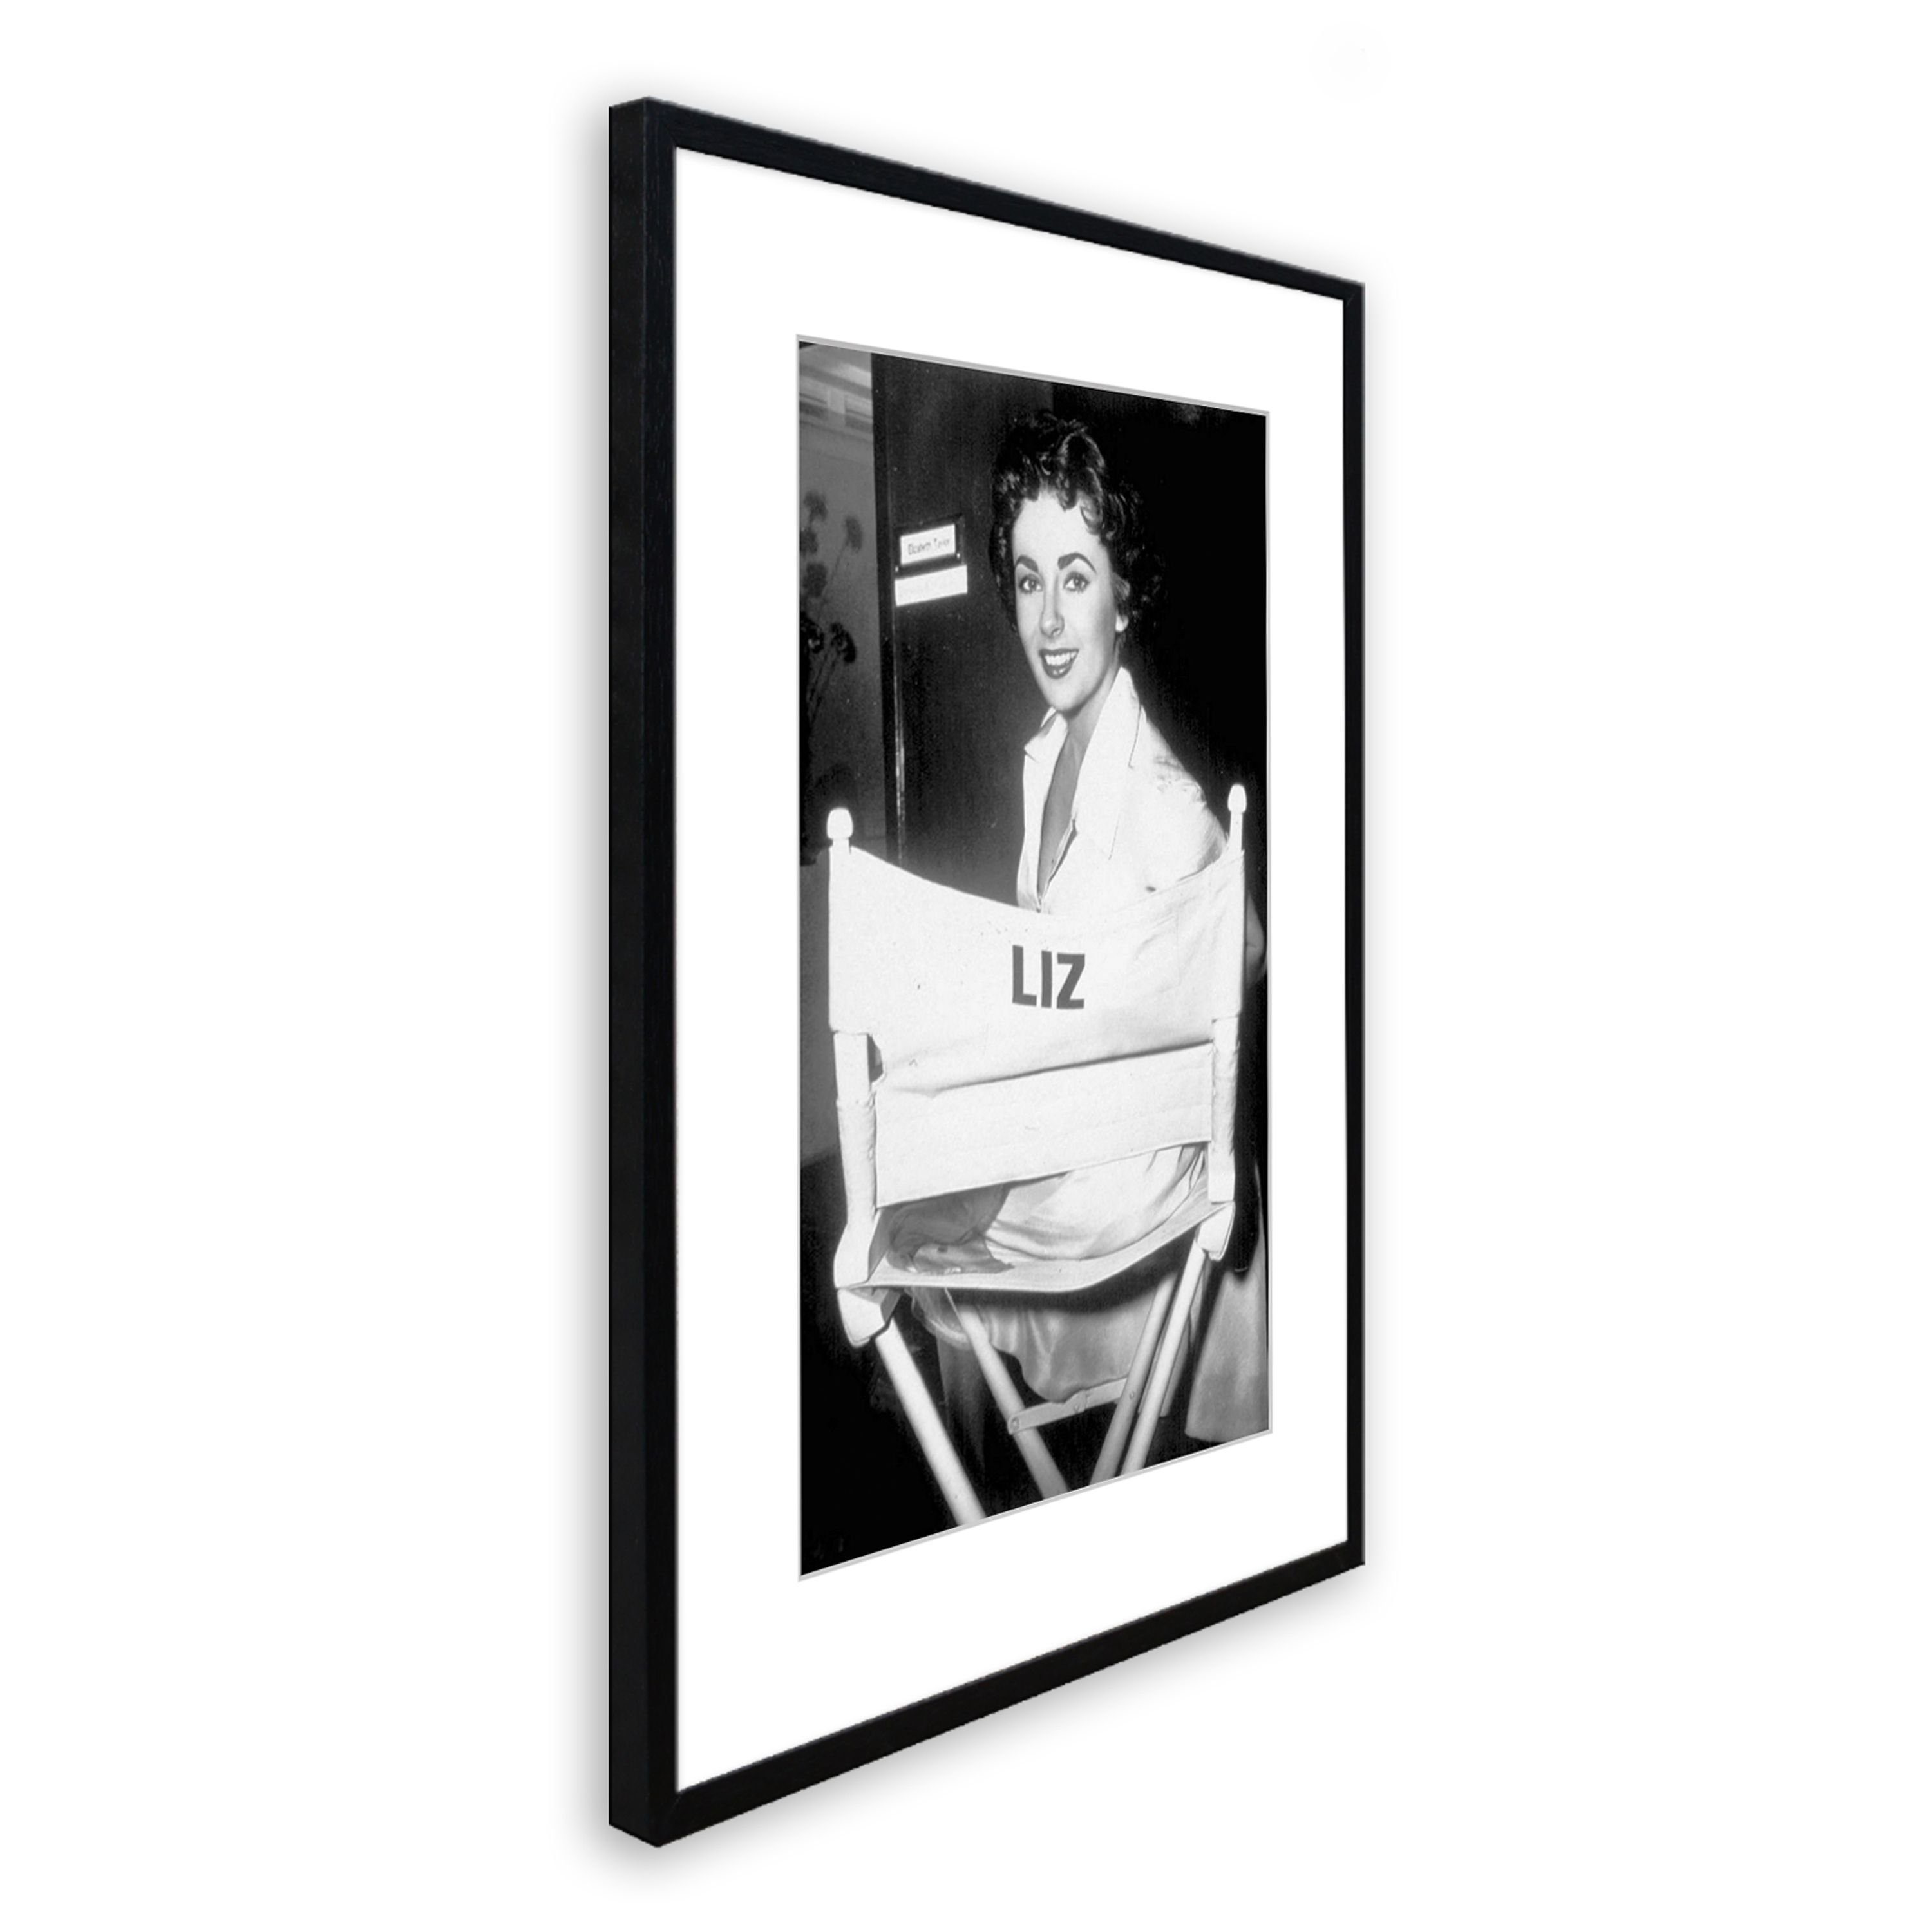 Elizabeth Poster Rahmen Bild schwarz-weiß gerahmt artissimo 51x71cm Rahmen Taylor, mit Taylor Film-Star: Bild / Elizabeth mit